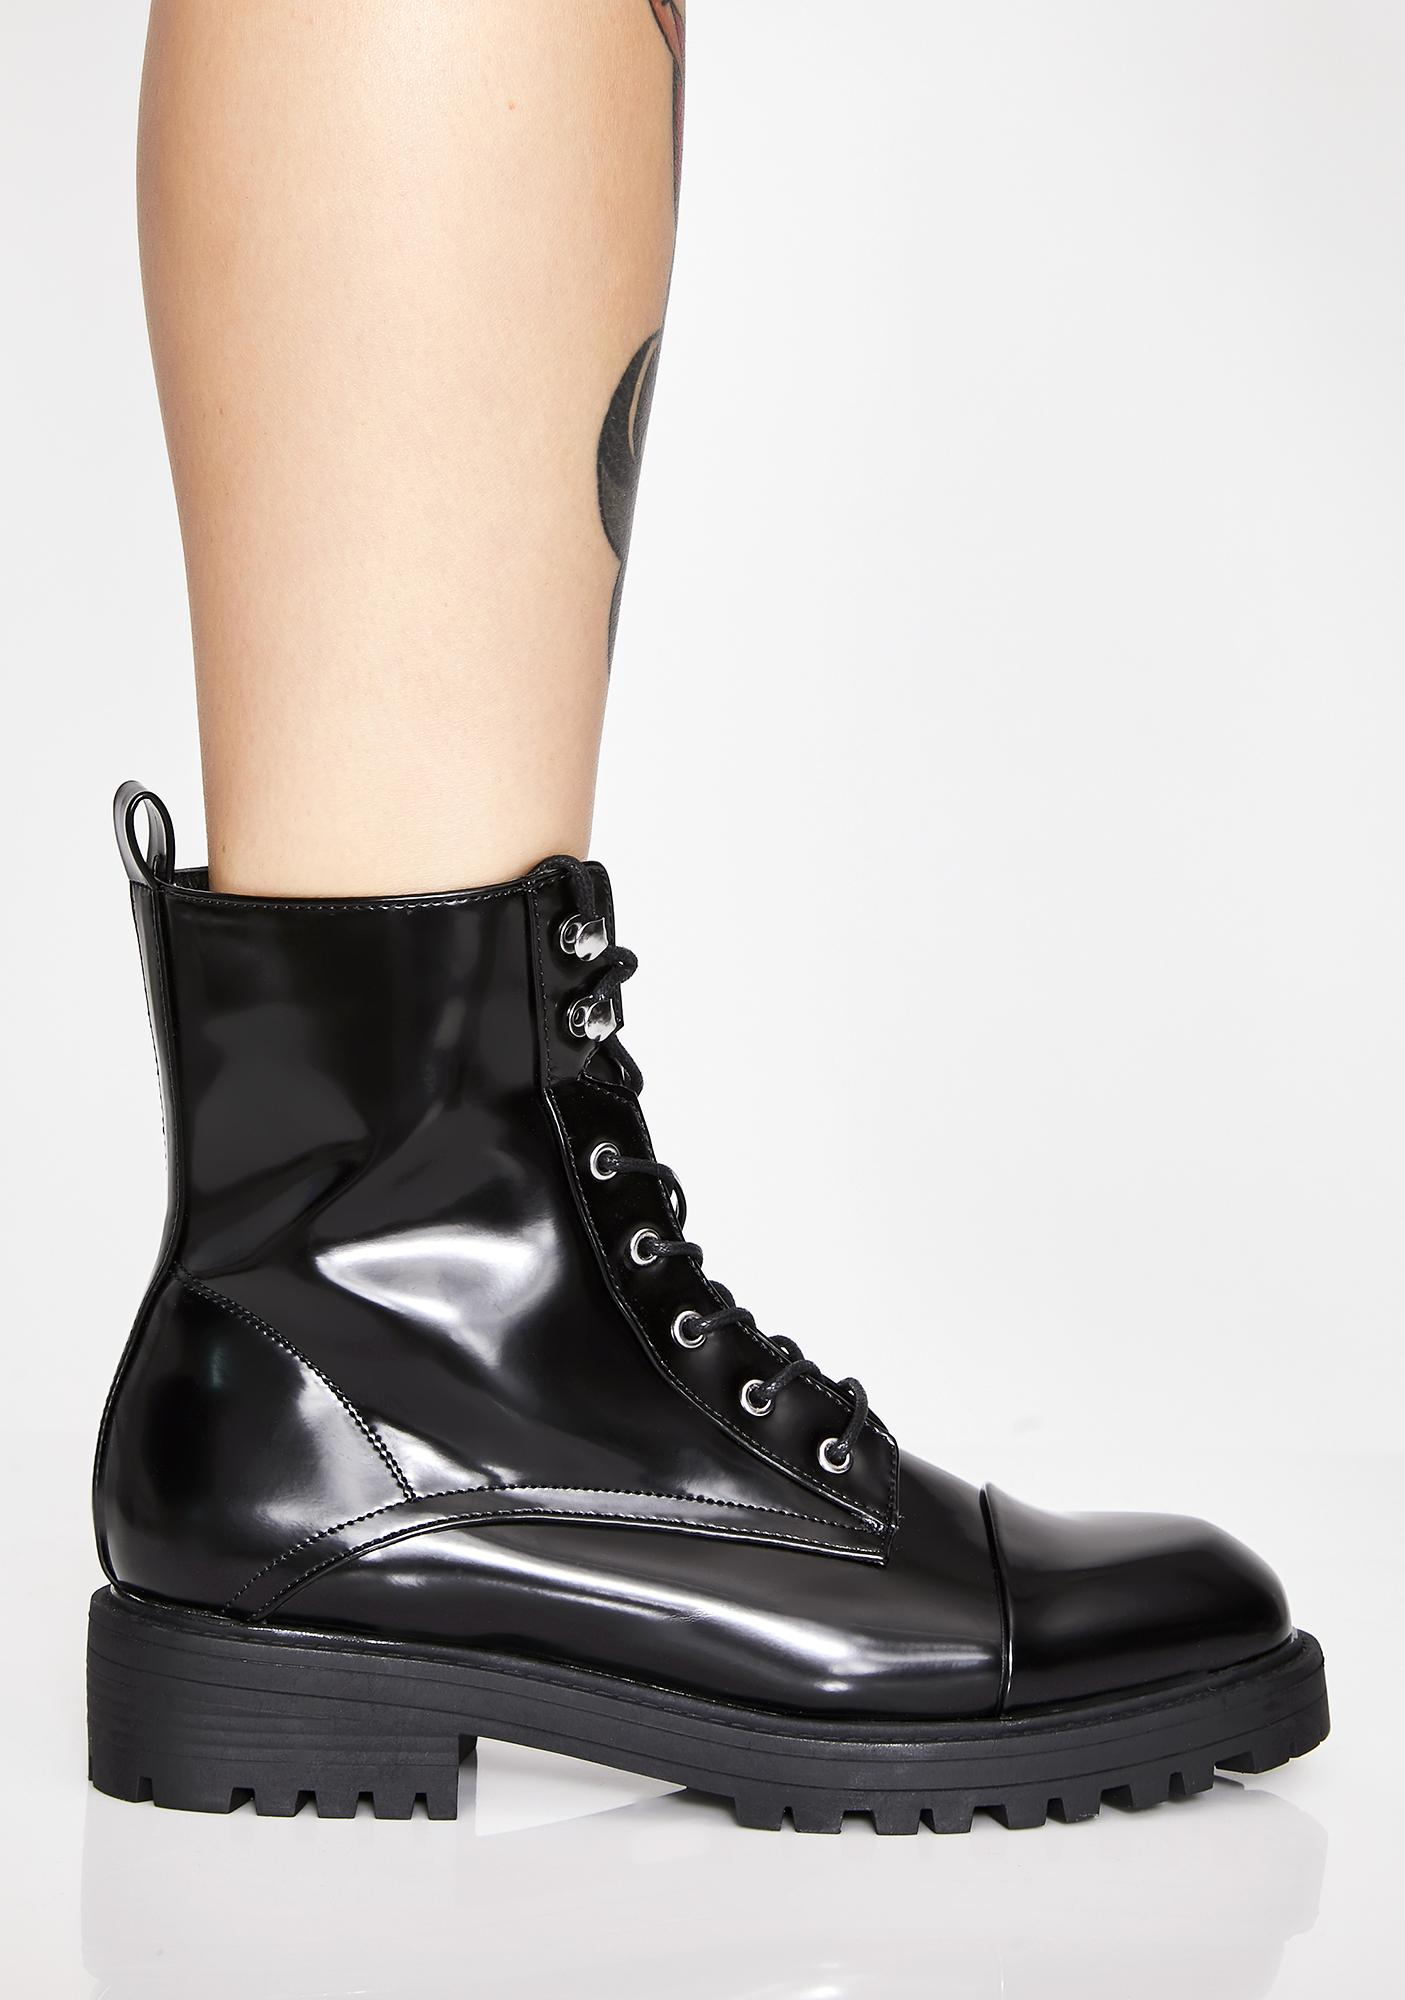 black boots shiny